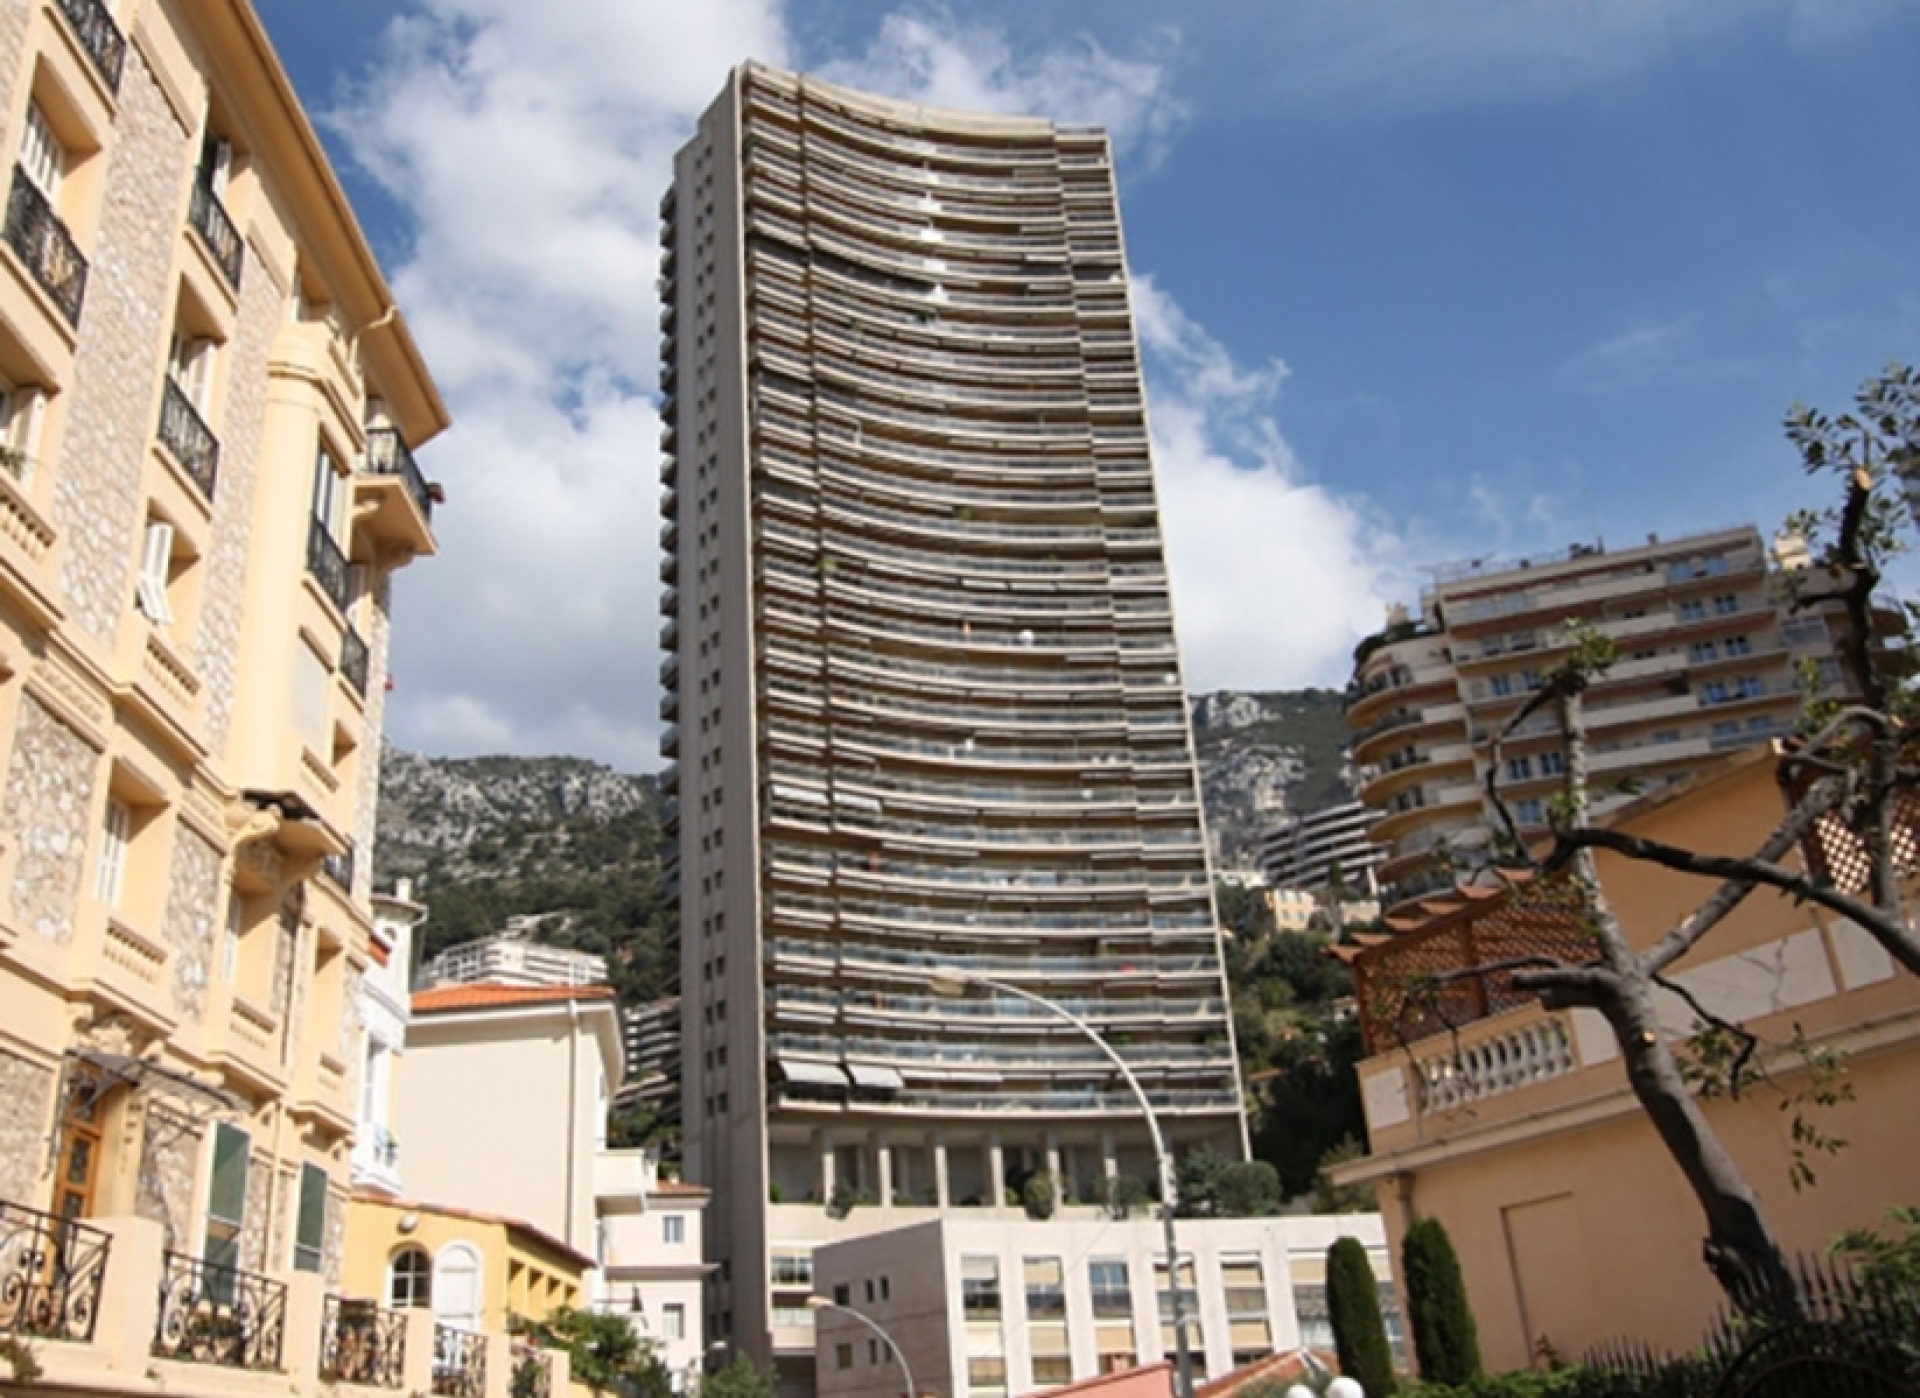 Dotta 4 rooms apartment for sale - ANNONCIADE - La Rousse - Monaco - imgannonciade